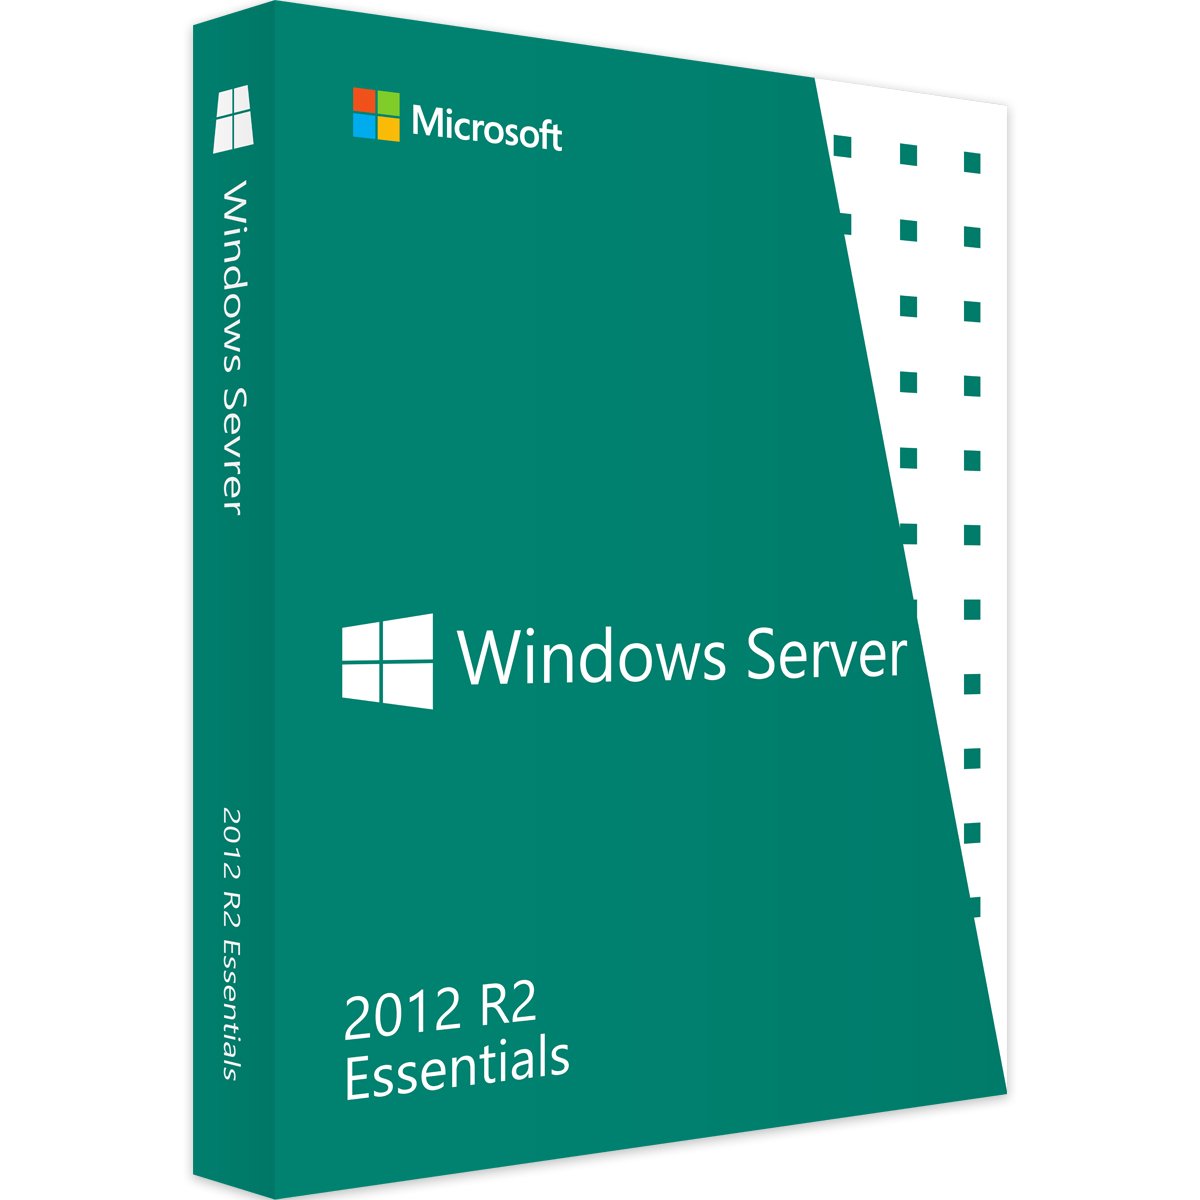 Windows Server 2012 R2 Essentials - Produktschlüssel - Vollversion - Sofort-Download - 1 PC von Microsoft